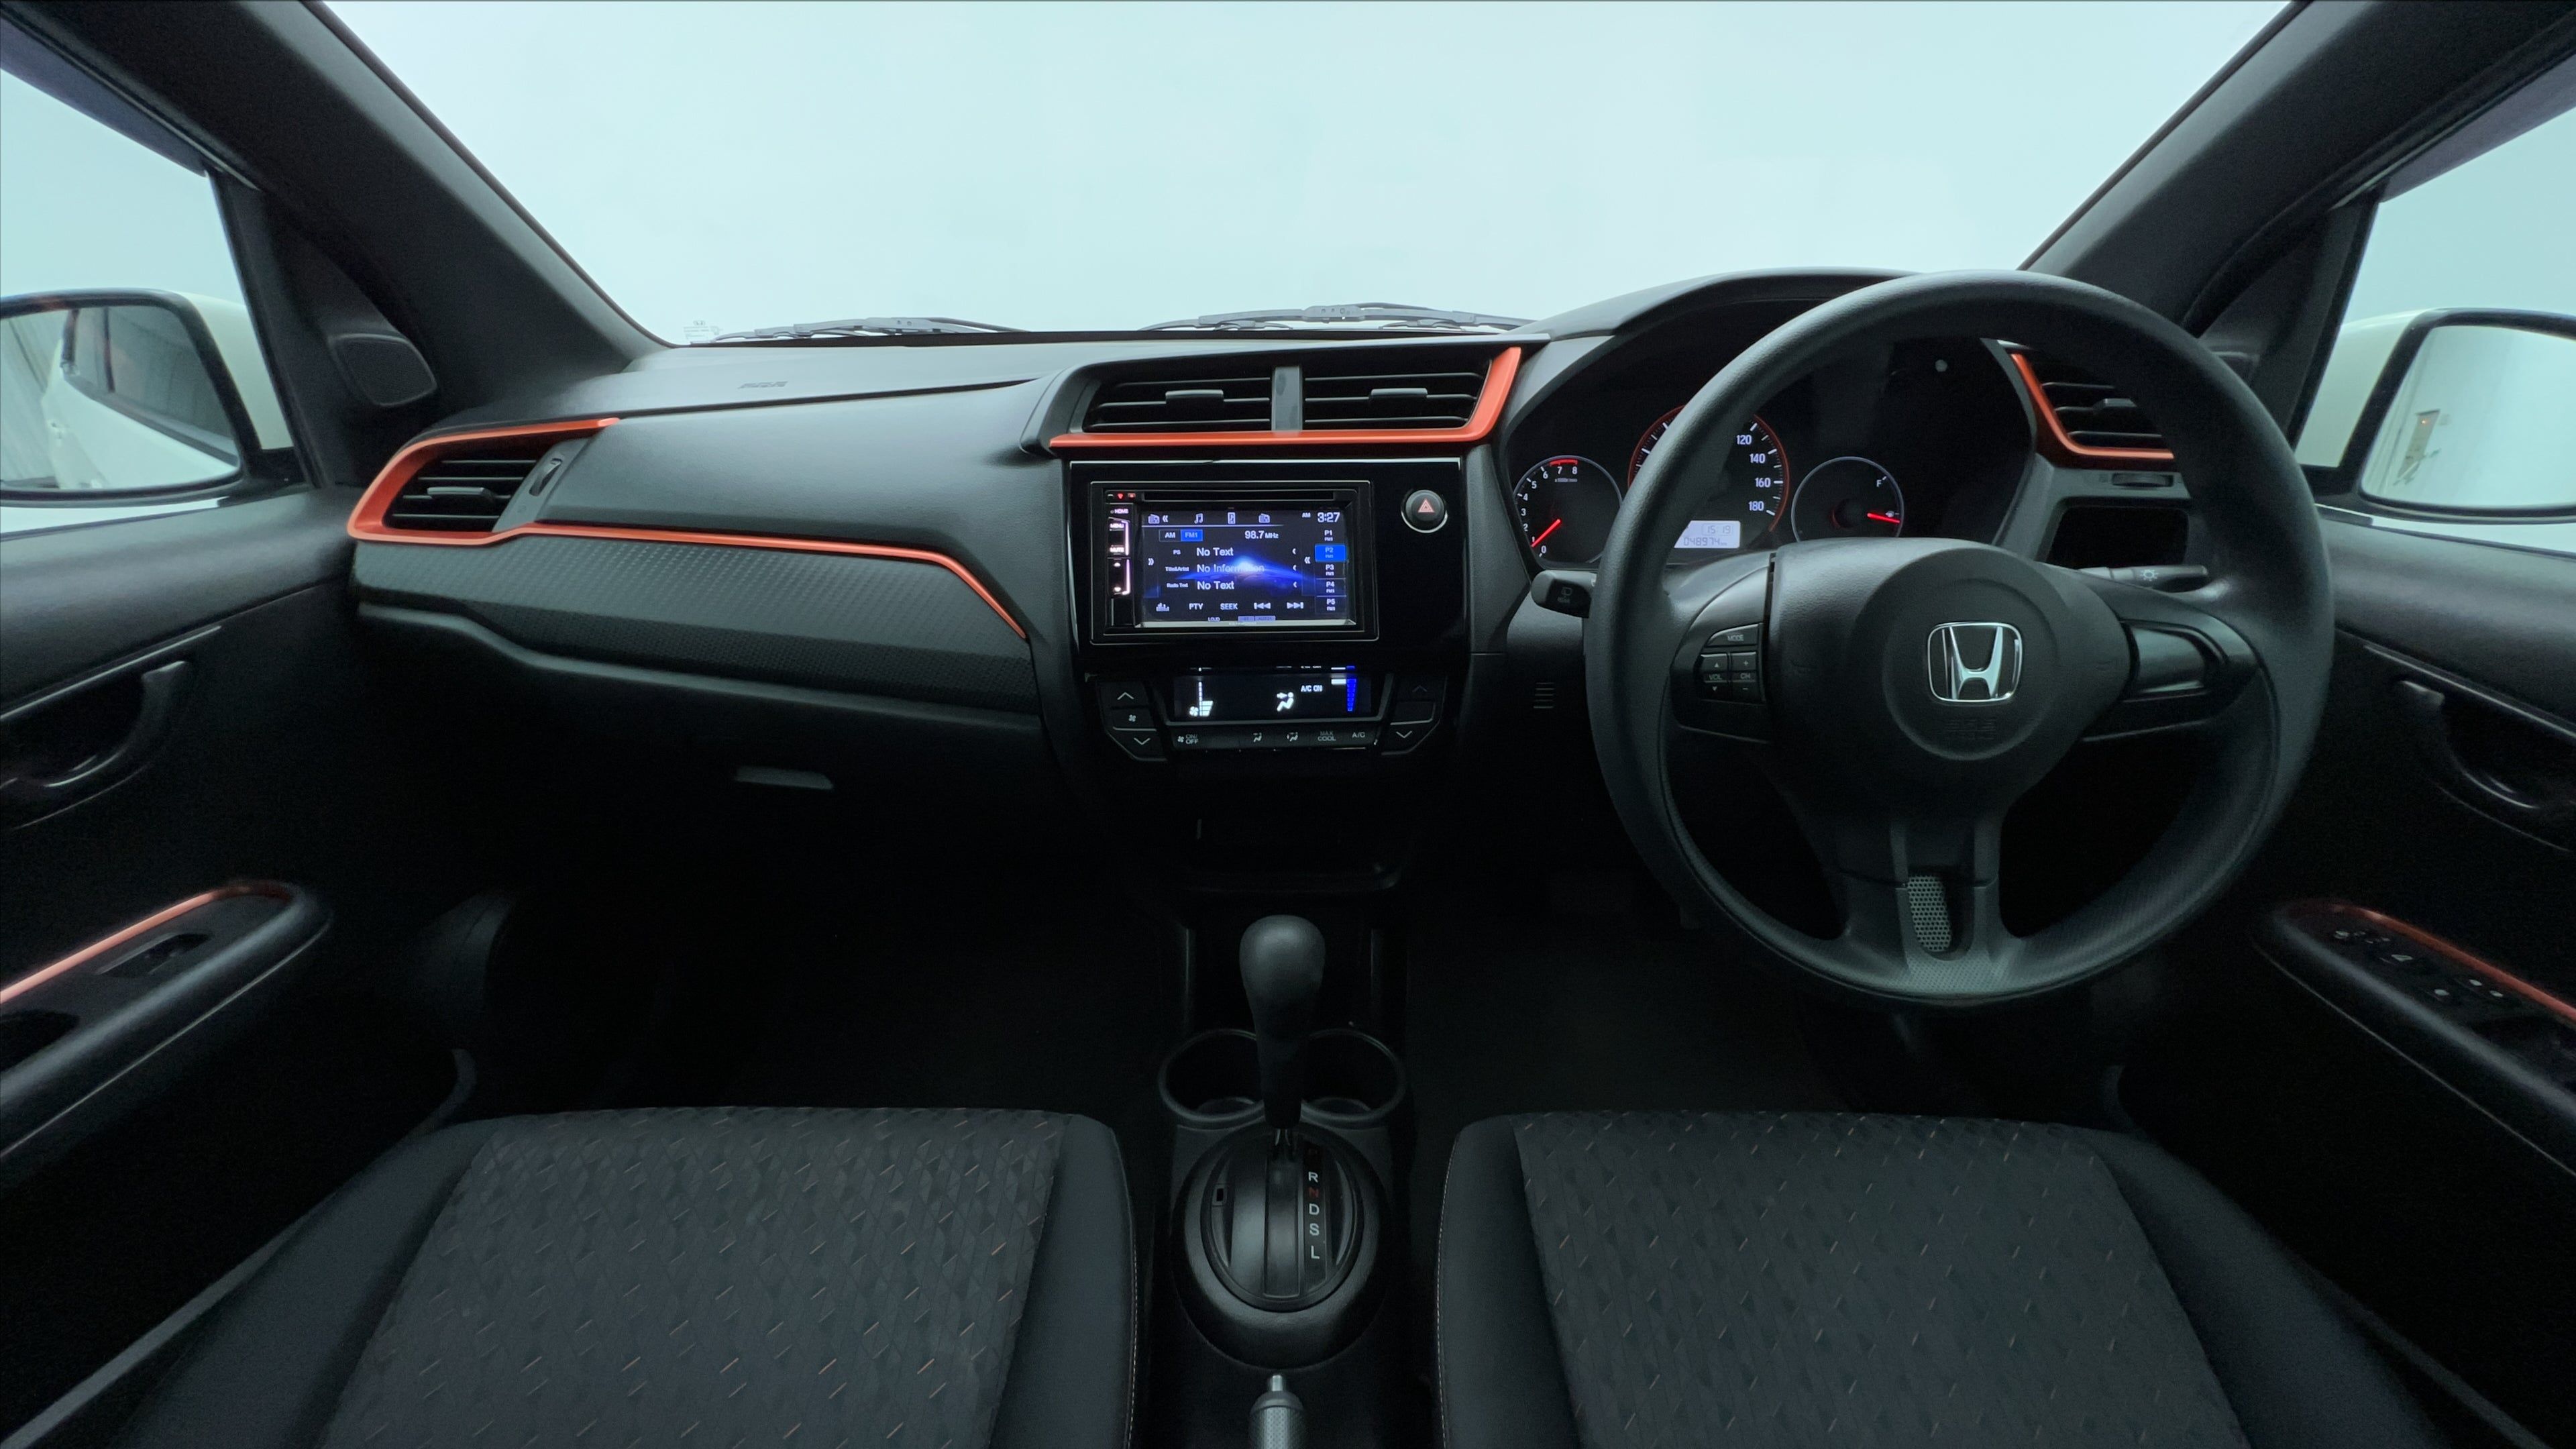 Dijual 2019 Honda Brio RS CVT RS CVT Bekas